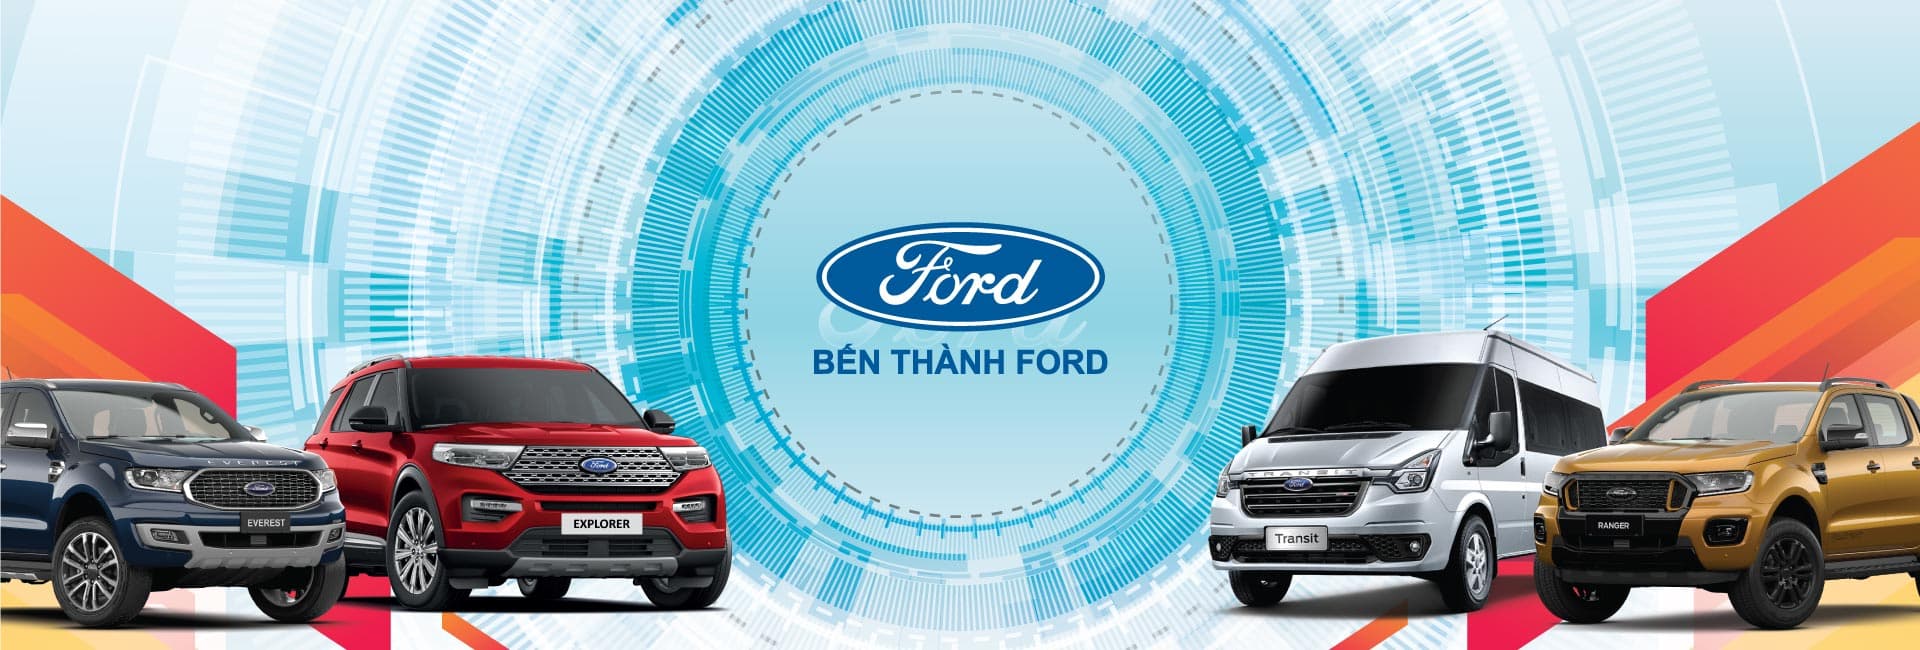 Giới thiệu Bến Thành Ford